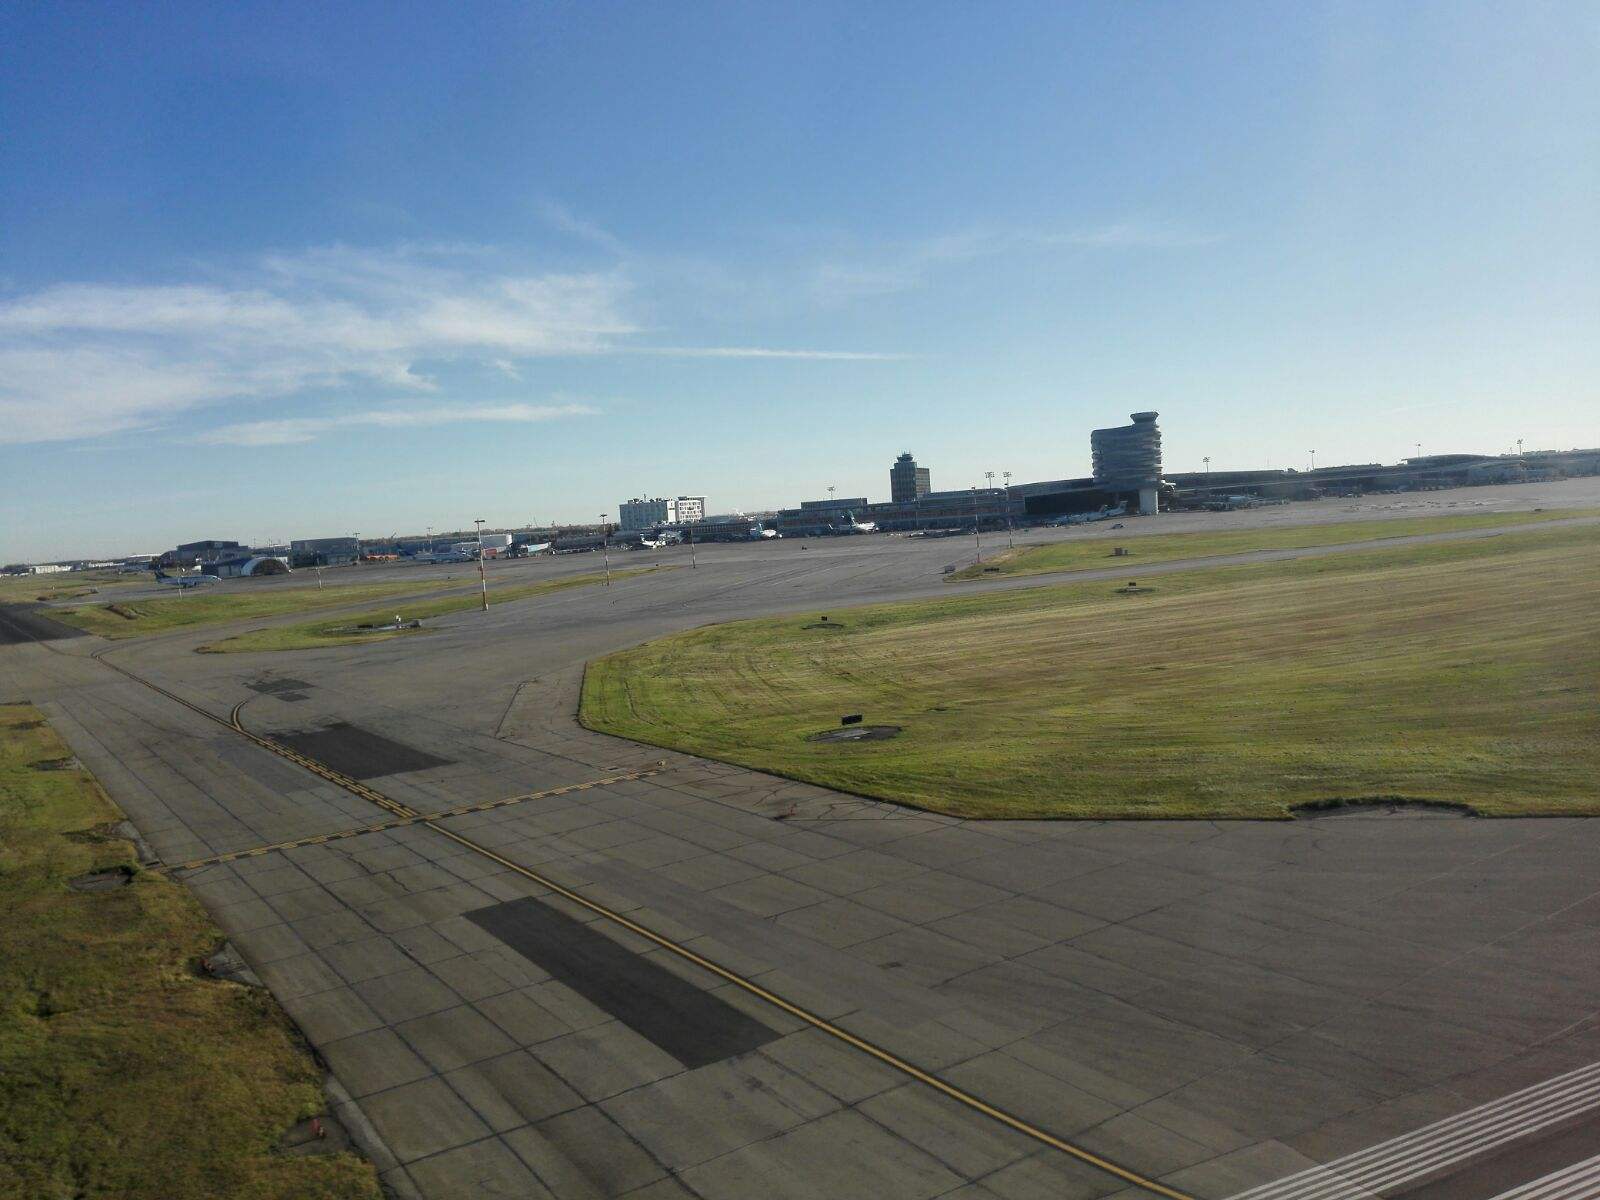 加拿大埃德蒙顿国际机场扩建航空货运基础设施